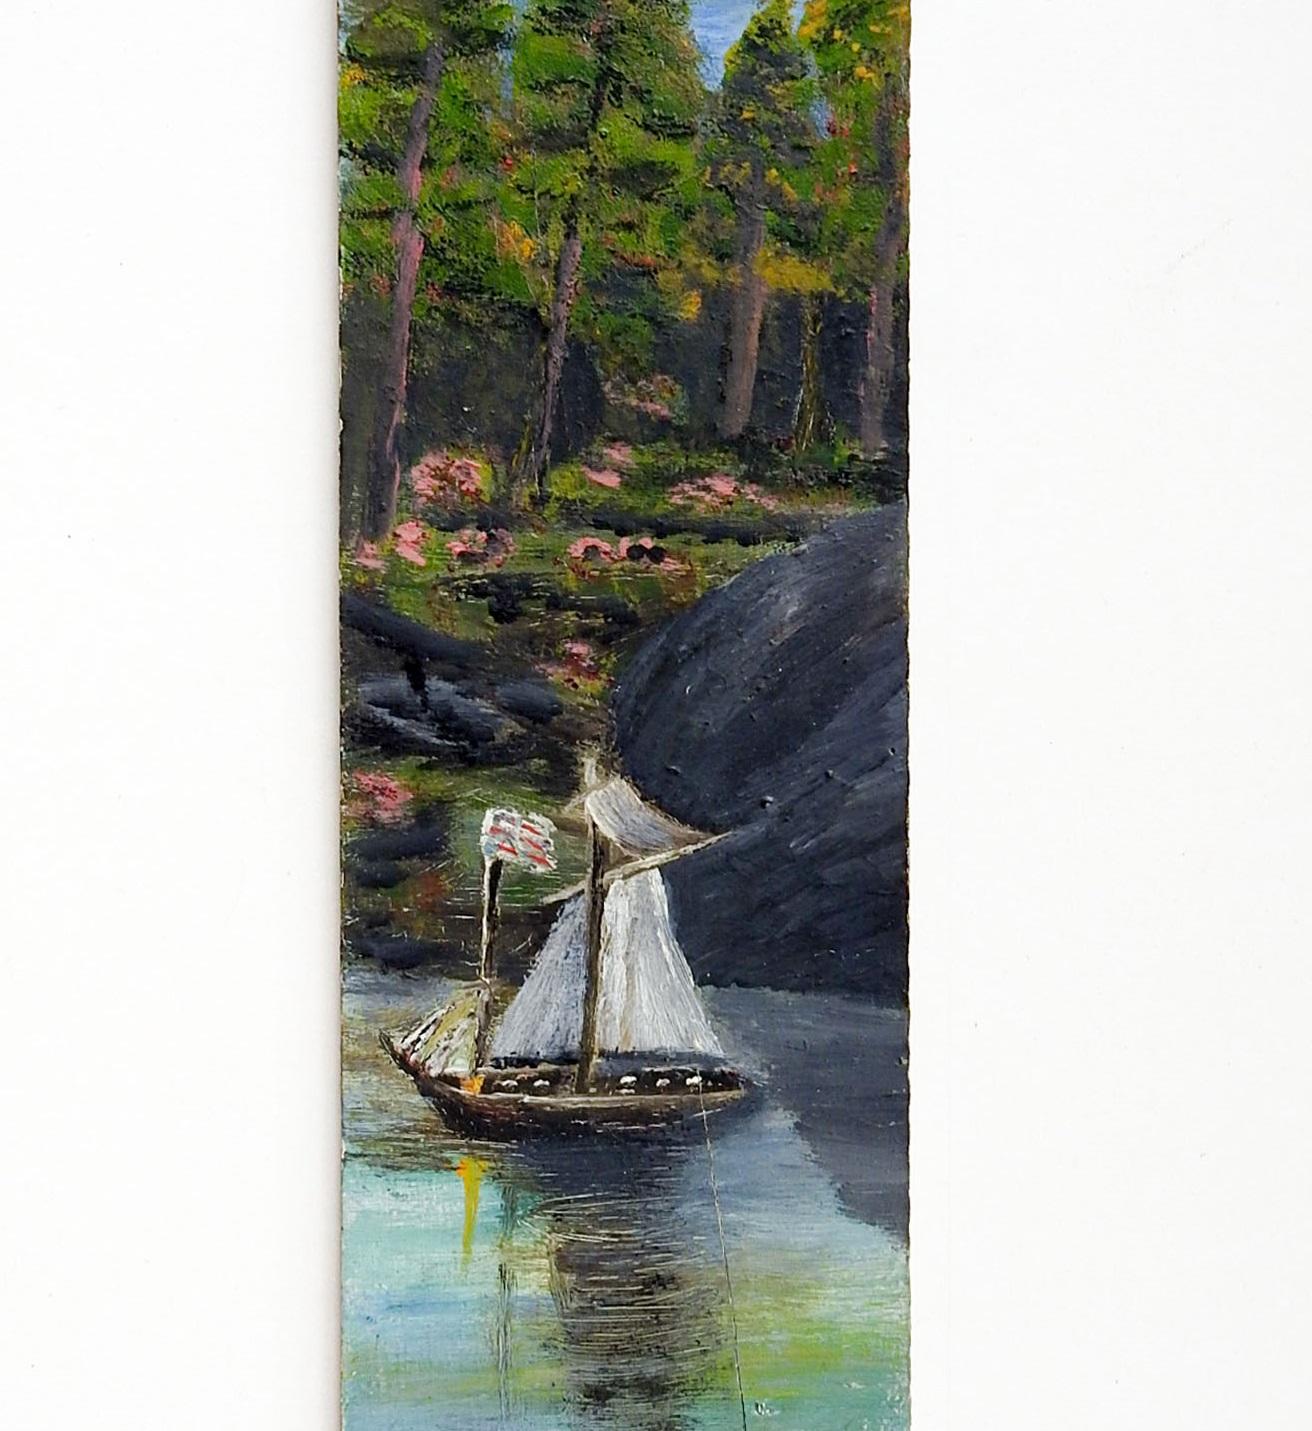 Antike circa 1915 Öl auf Holzbrett Volkskunst Flussszene mit Schiff mit amerikanischer Flagge Malerei, Holz ist von einem alten Tabakkiste. Nicht signiert. Ungerahmt, Randabrieb.